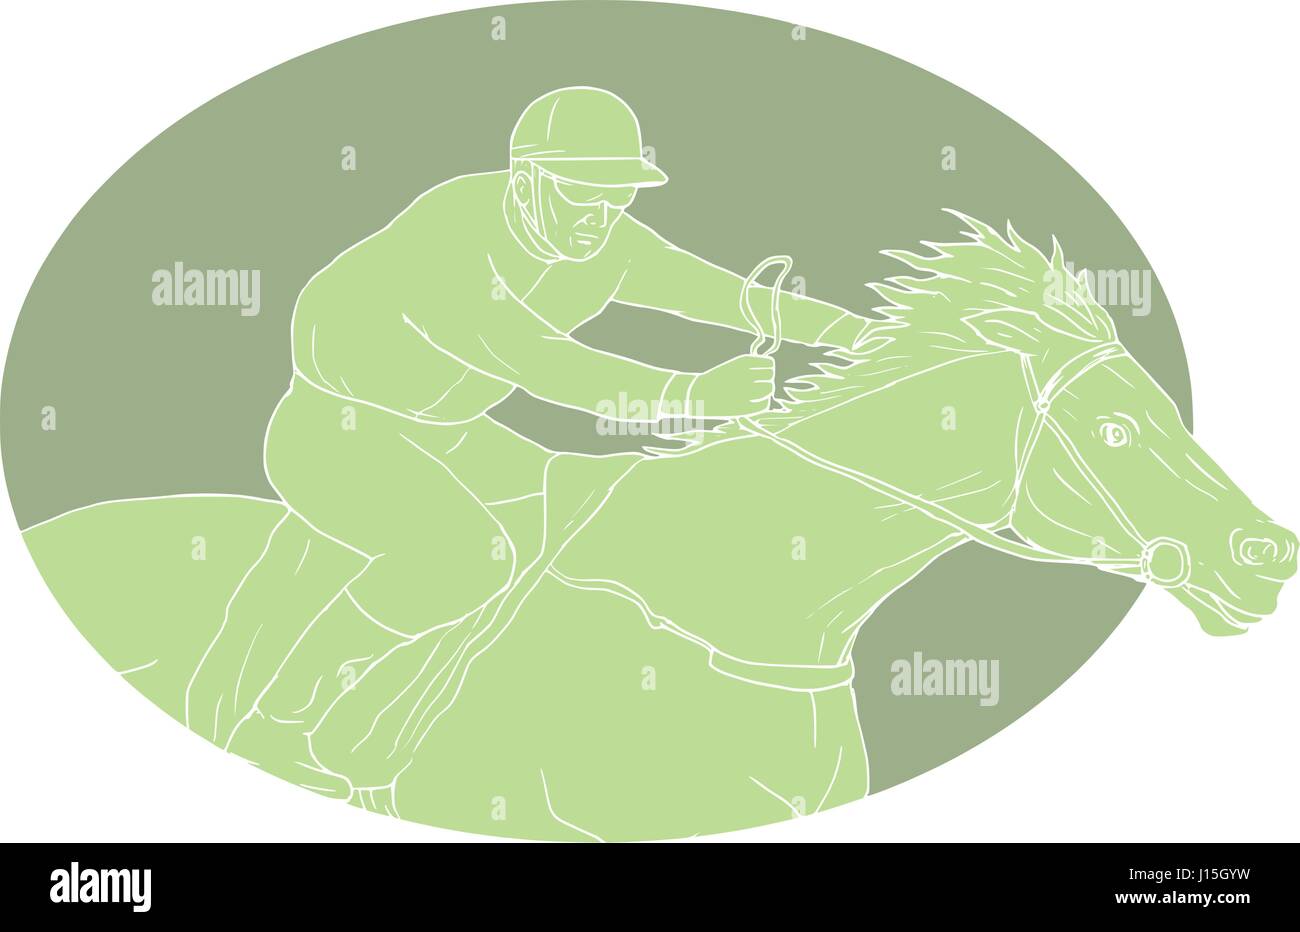 Croquis dessin illustration style de jockey riding a horse racing vu du côté situé à l''intérieur de la forme ovale sur fond isolé. Illustration de Vecteur